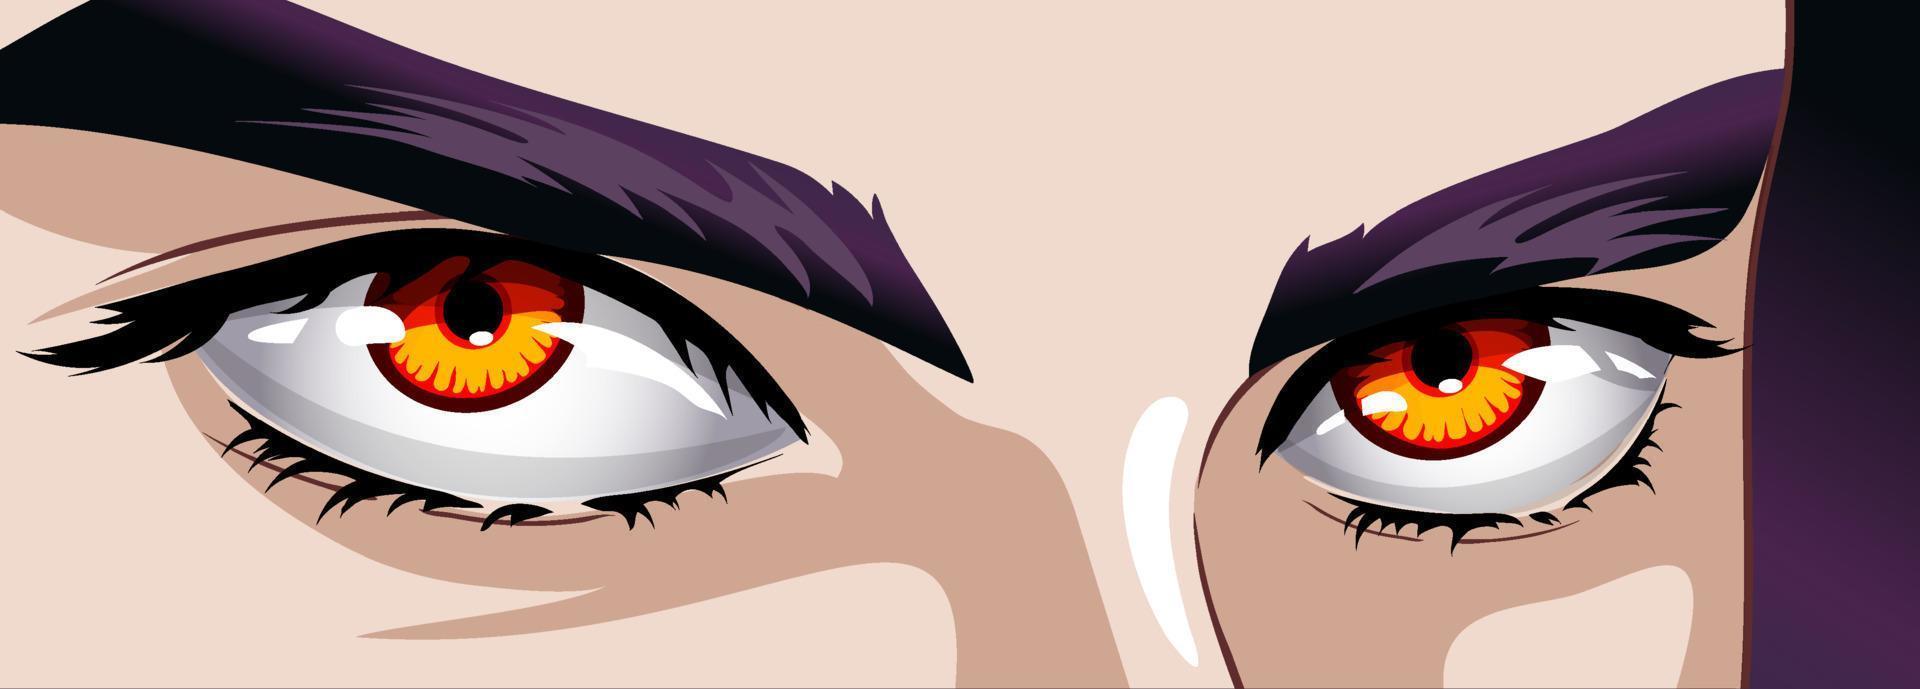 röd ögon av en man i manga och anime stil. vektor